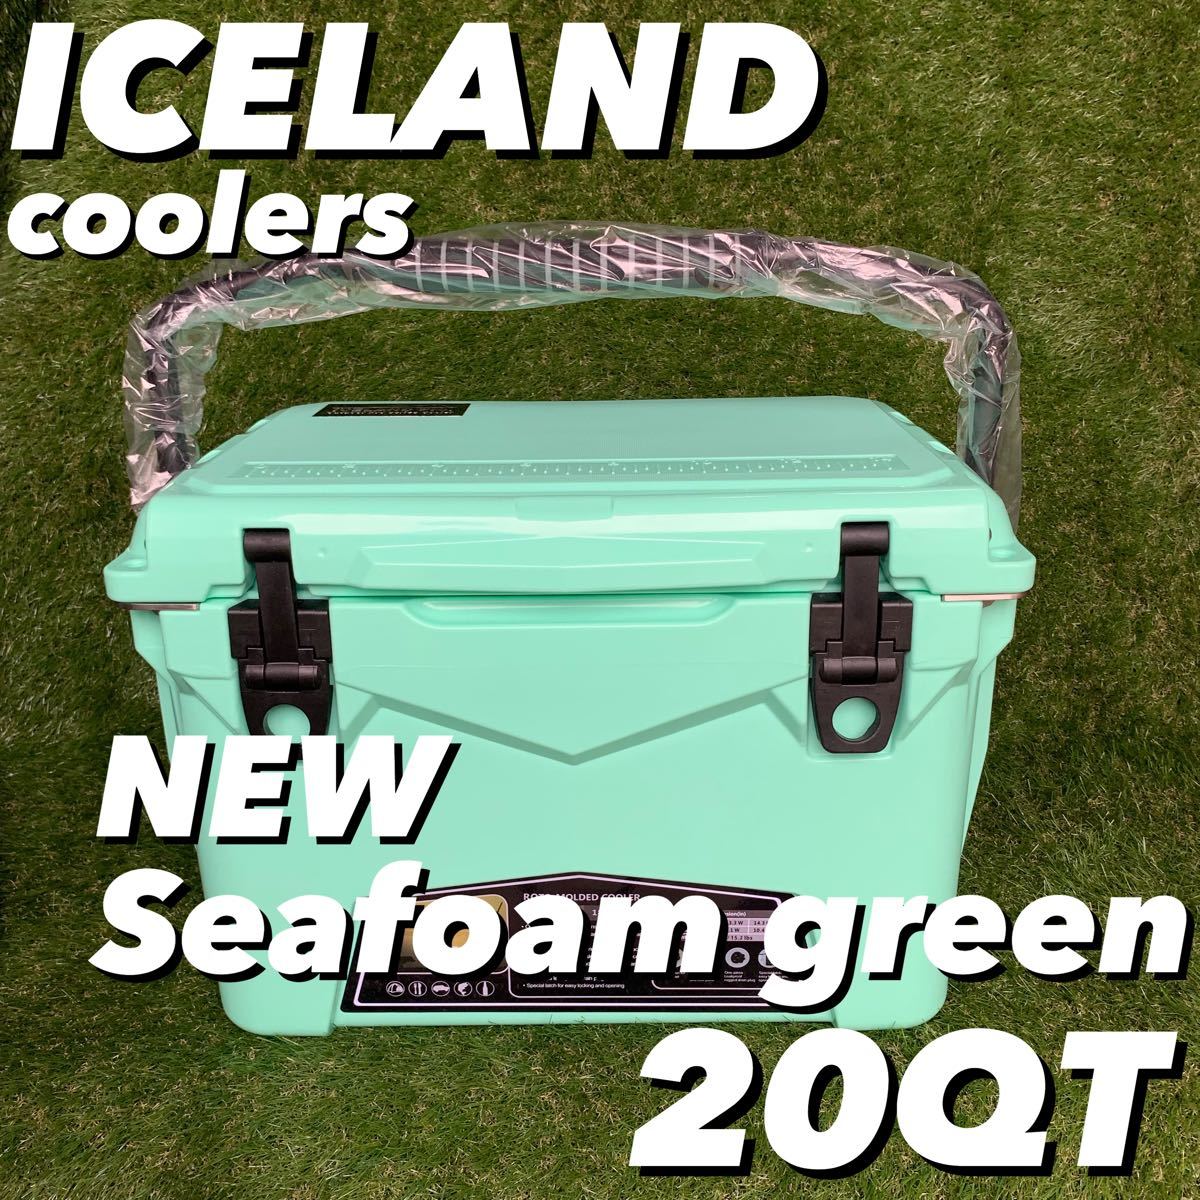 ハードクーラー アイスランドクーラーボックス 20QT シーフォームグリーン 新品未使用 キャンプ グランピング